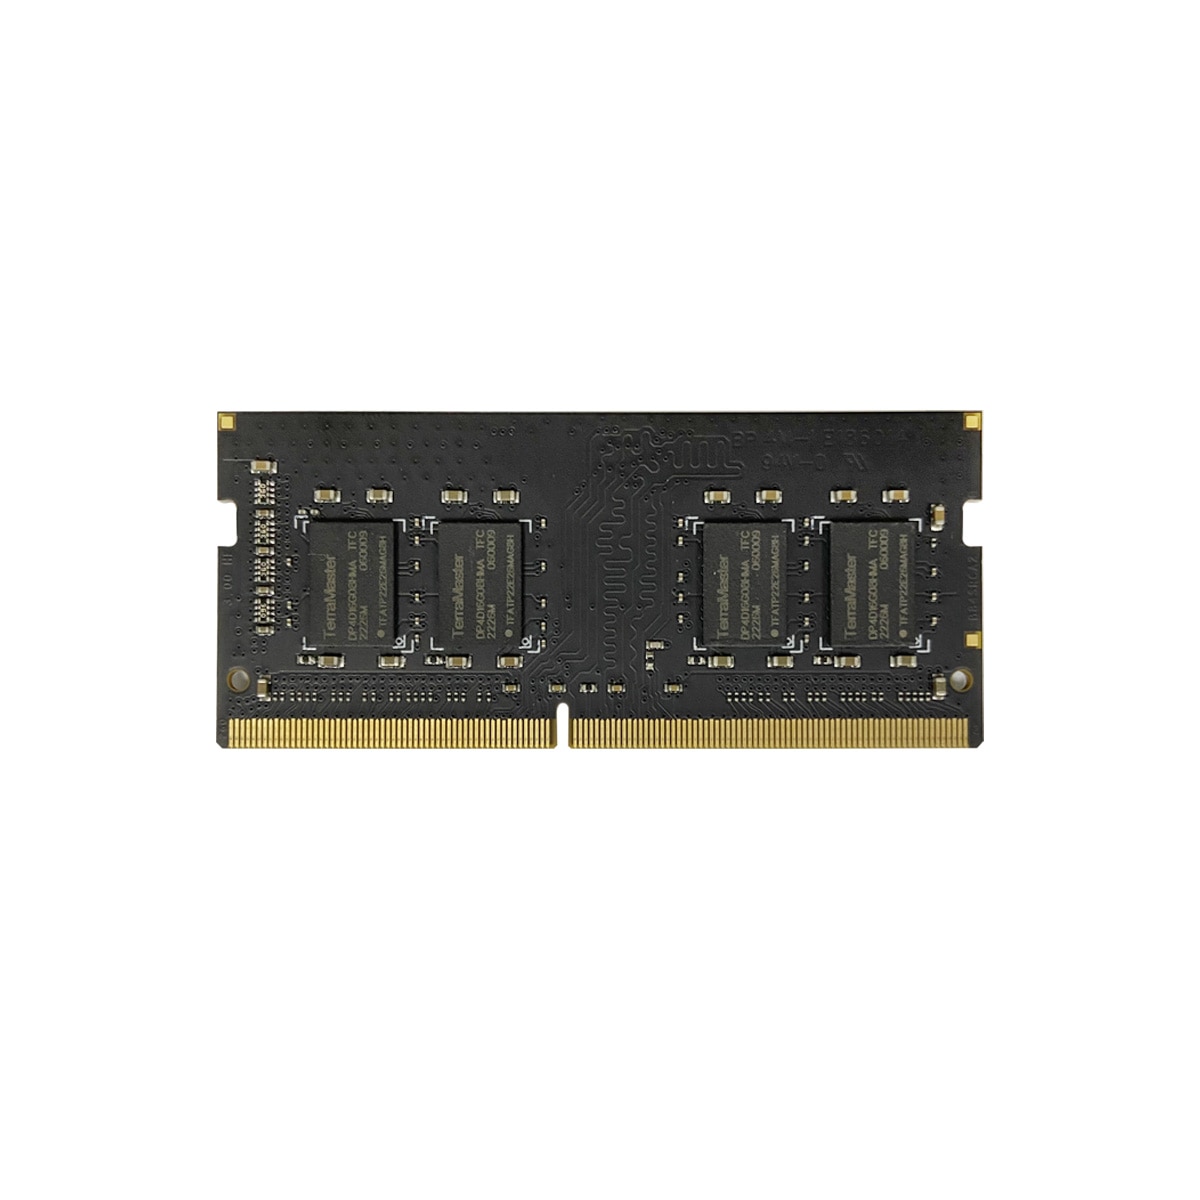 TERRAMASTER 16G DDR4 RAM SO-DIMM, F2-223, F4-223, F2-423, F4-423, T6-423, T9-423, T12-423, U4-423, U8-423